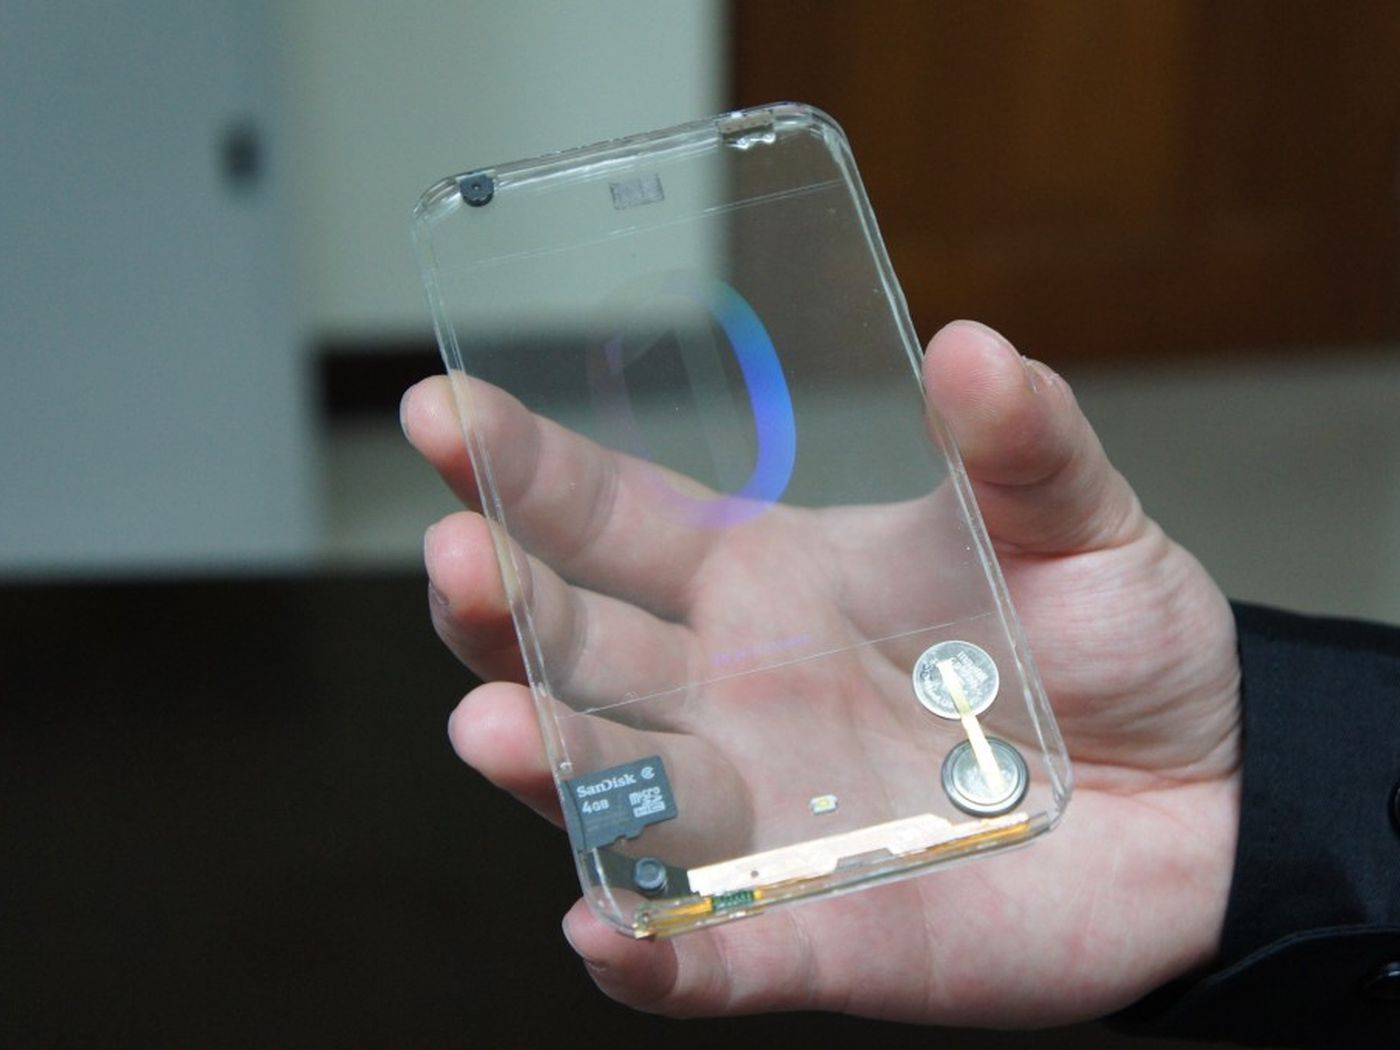 台湾宝创公司制作的透明手机原型,使用了 oled 屏,纽扣电池及 sd